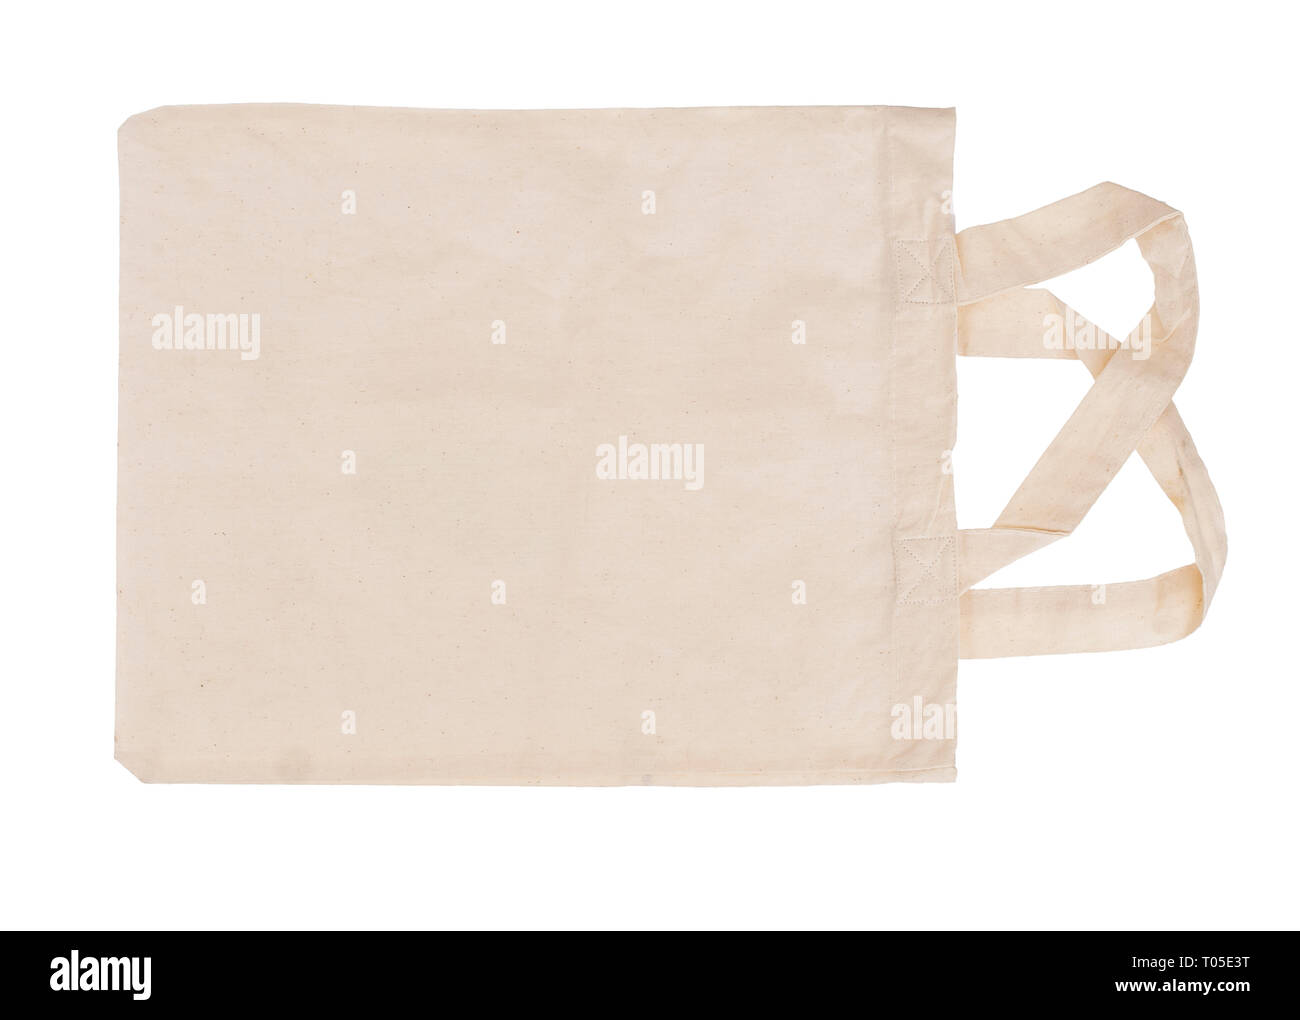 Riutilizzabili, riciclabili tessuto shopping tote bag, isolato su bianco. Per rispettosi dell'ambiente, verde i consumatori. Foto Stock